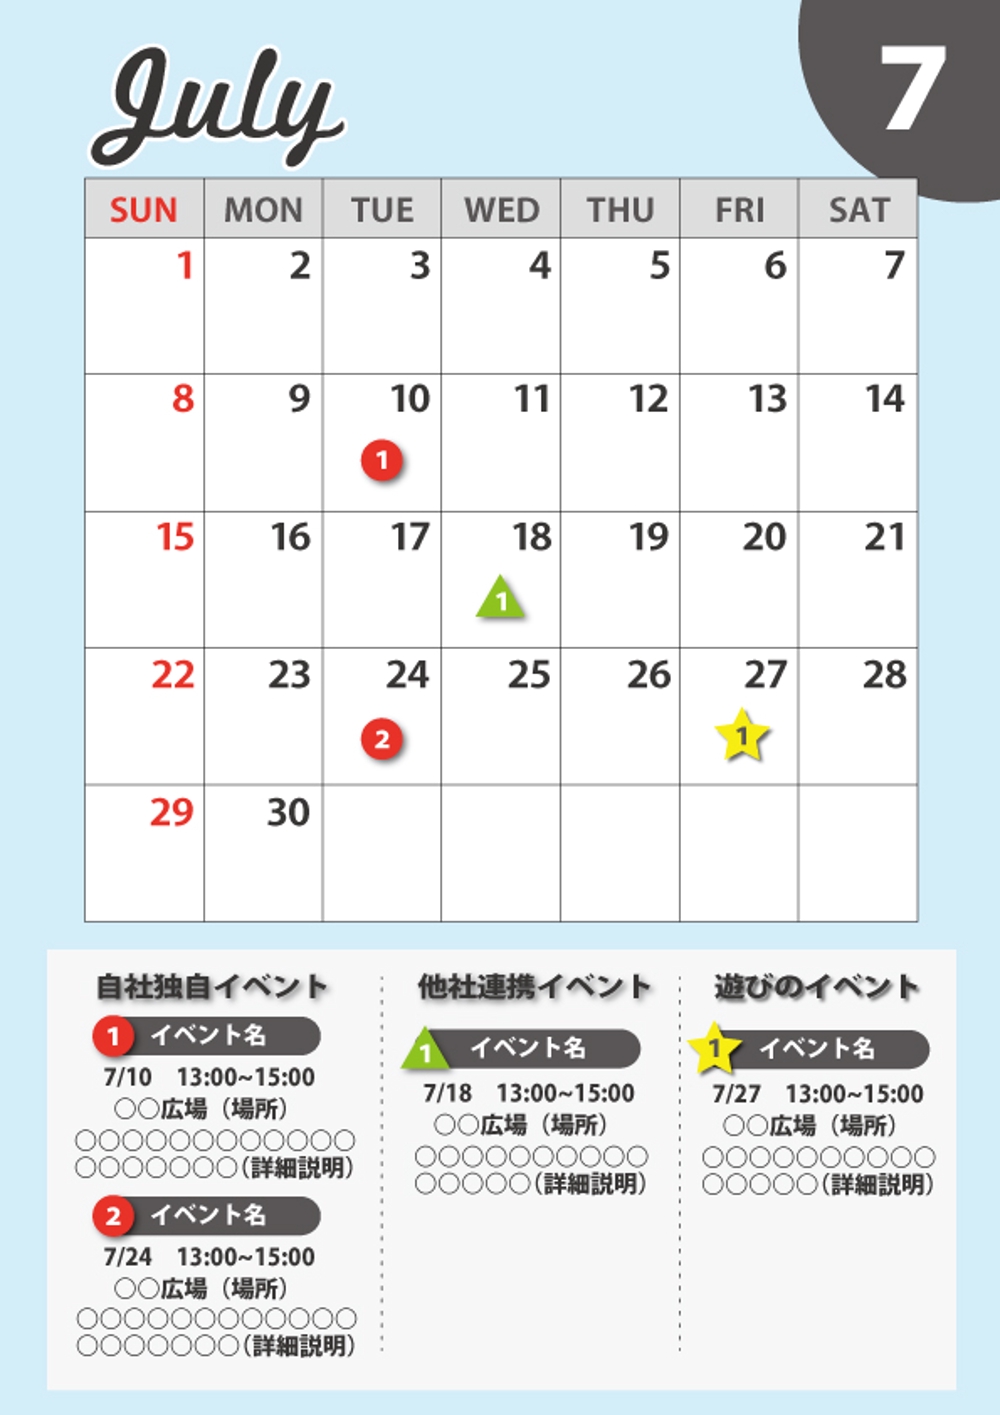 工務店のイベントカレンダー